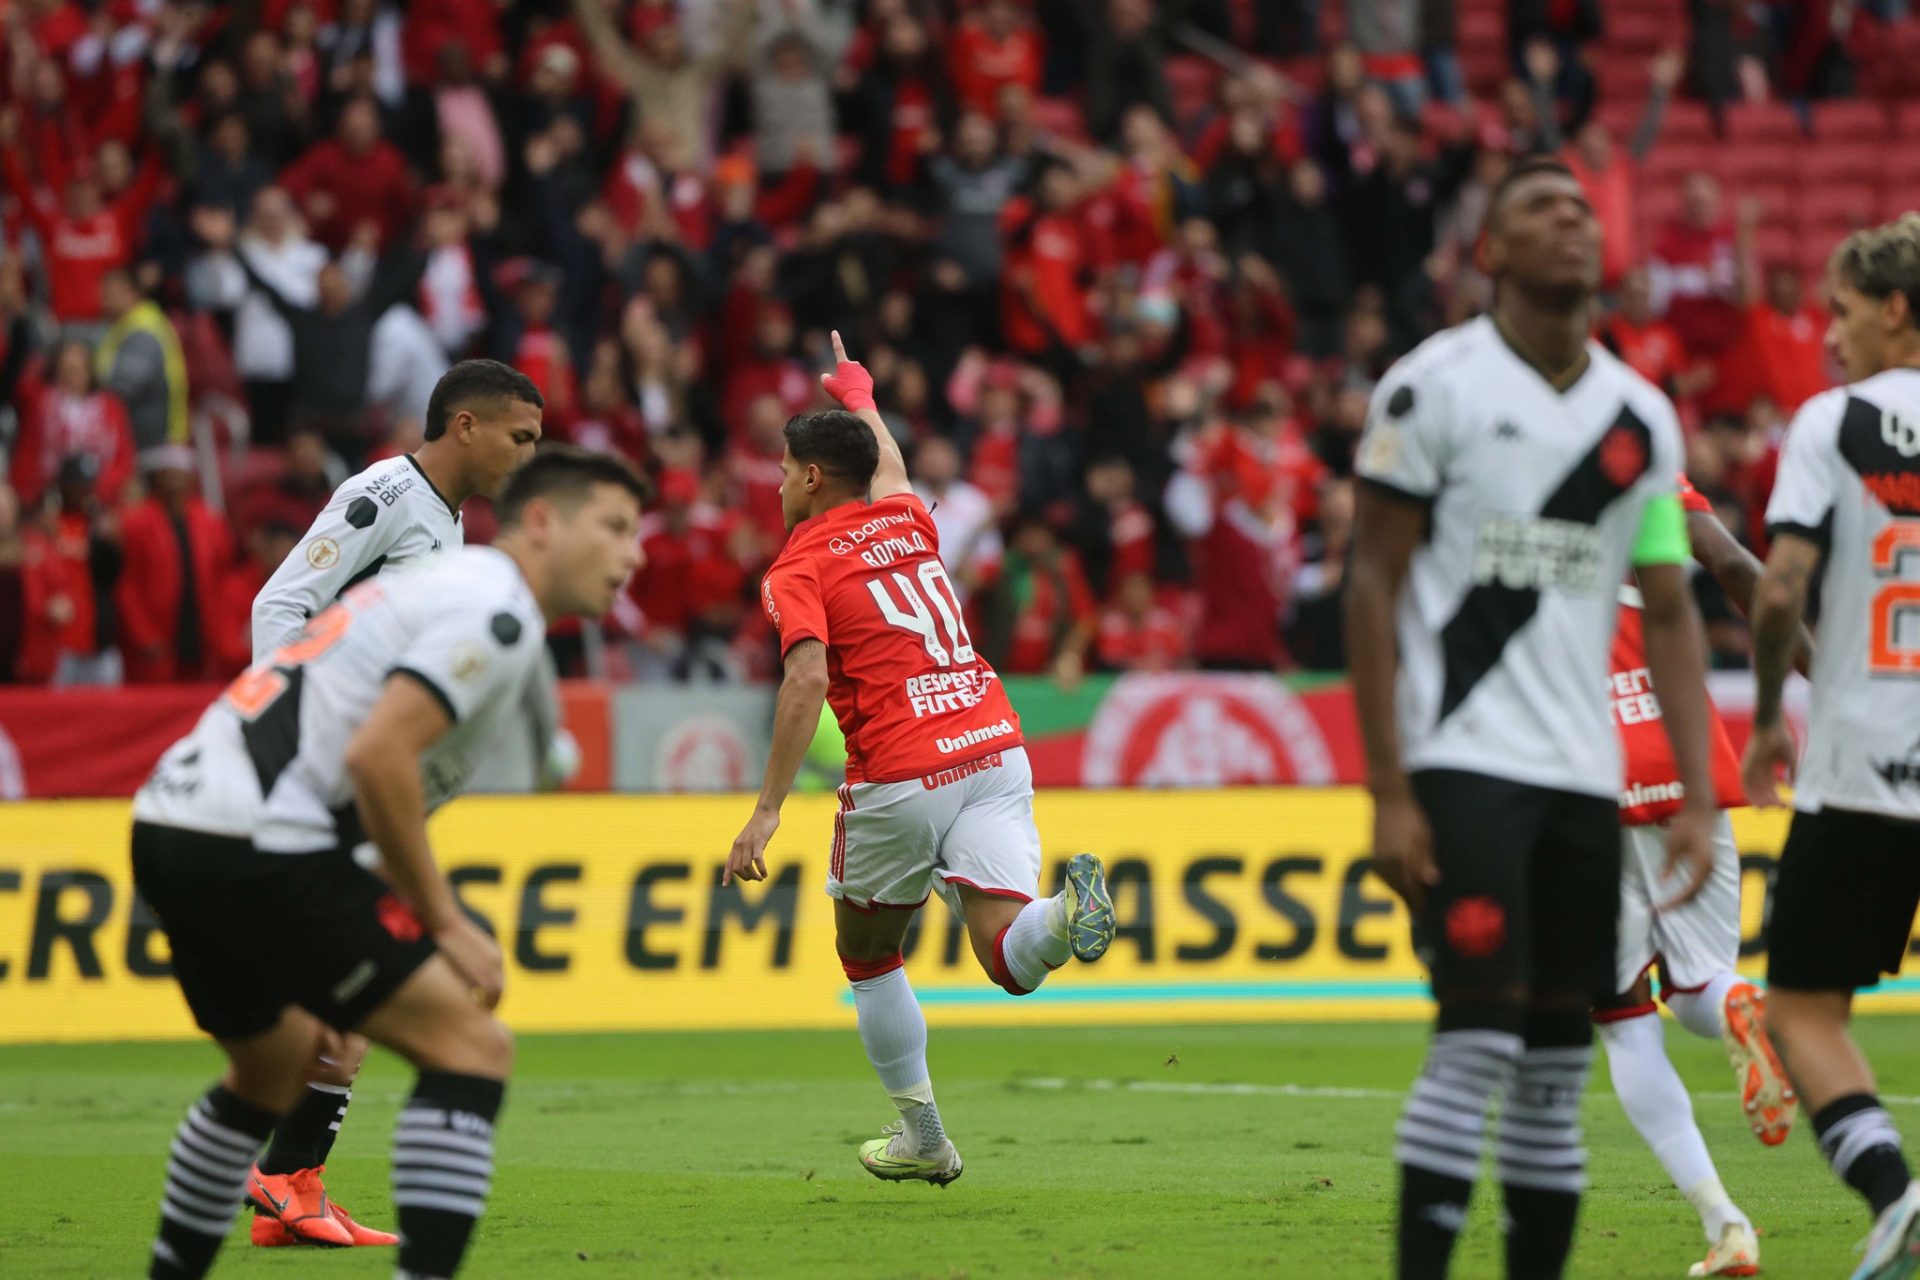 Internacional derrota o Vasco pela oitava rodada do Campeonato Brasileiro - Foto: Reprodução/Sport Club Internacional